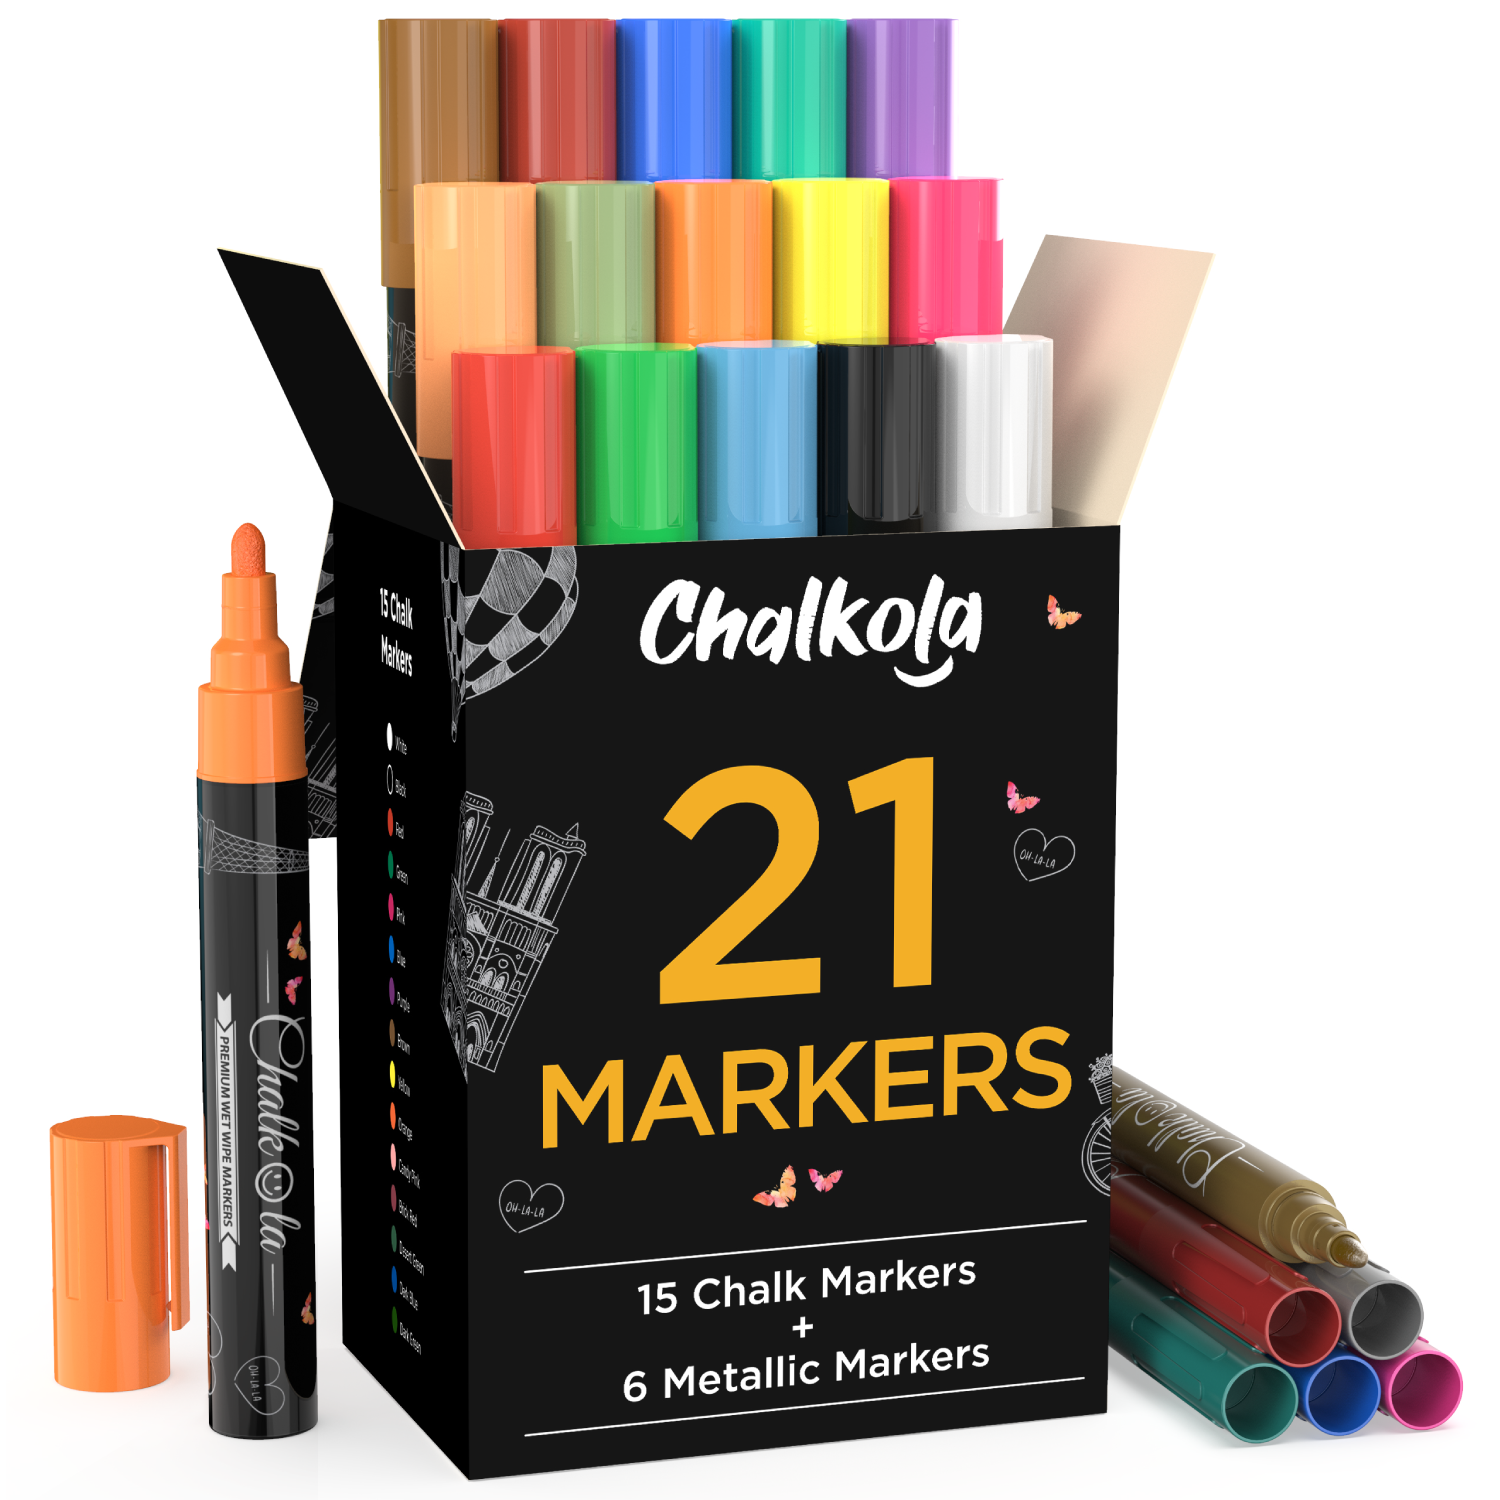 Chalk Pens, Chalkboard Pens